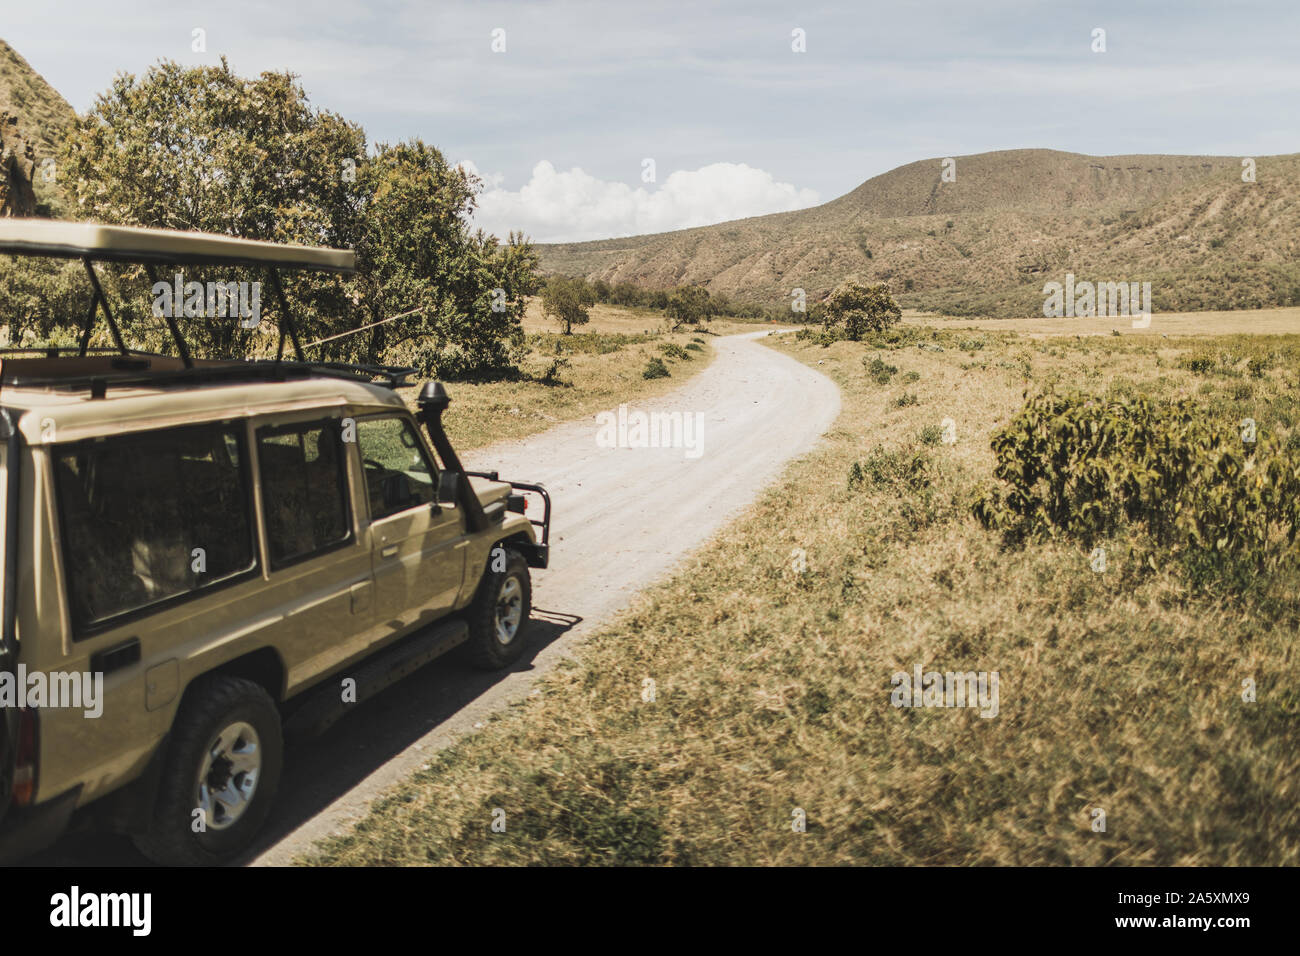 Safari dans le parc national de Hell's Gate, au Kenya. Voiture jeep hors route, de savane et sur la montagne. Explorer la nature sauvage de l'Afrique. Banque D'Images